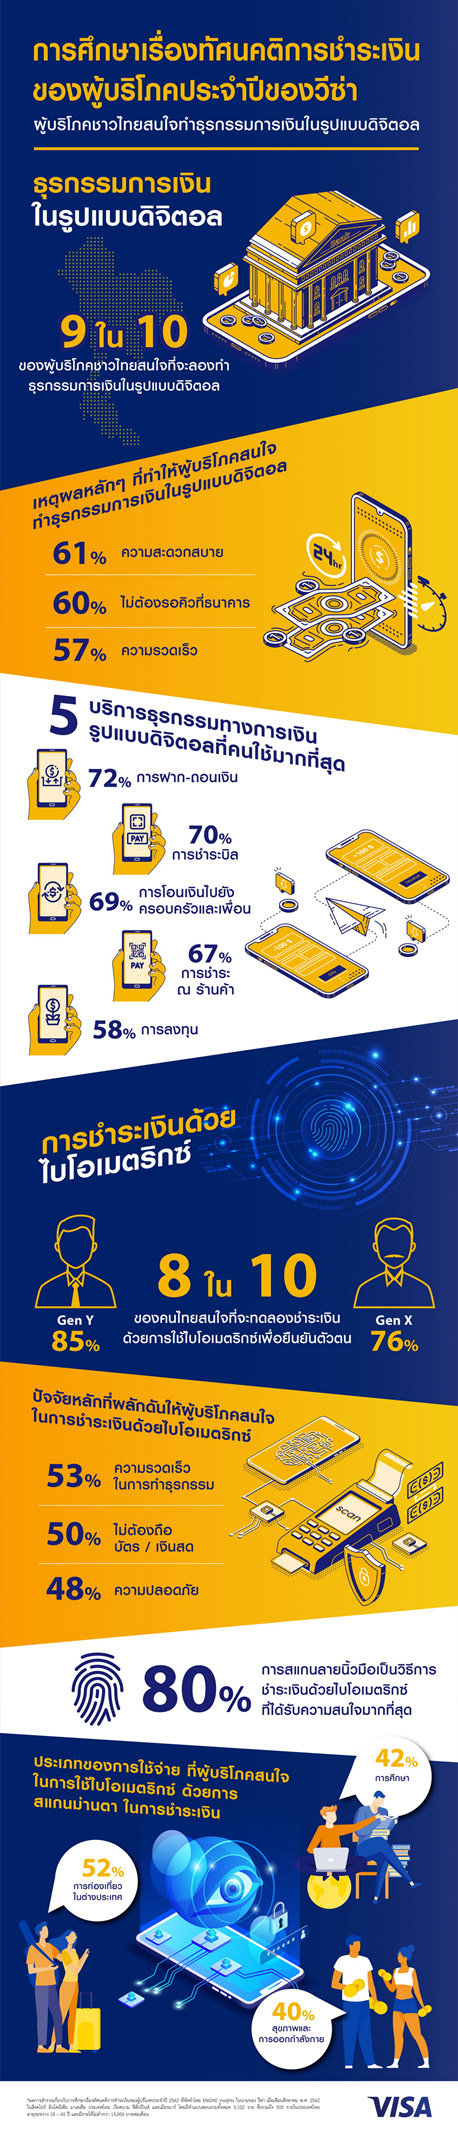 วีซ่าเผยผลสำรวจเกือบ 9 ใน 10 ของผู้บริโภคชาวไทยทำธุรกรรมการเงินในรูปแบบดิจิทัล